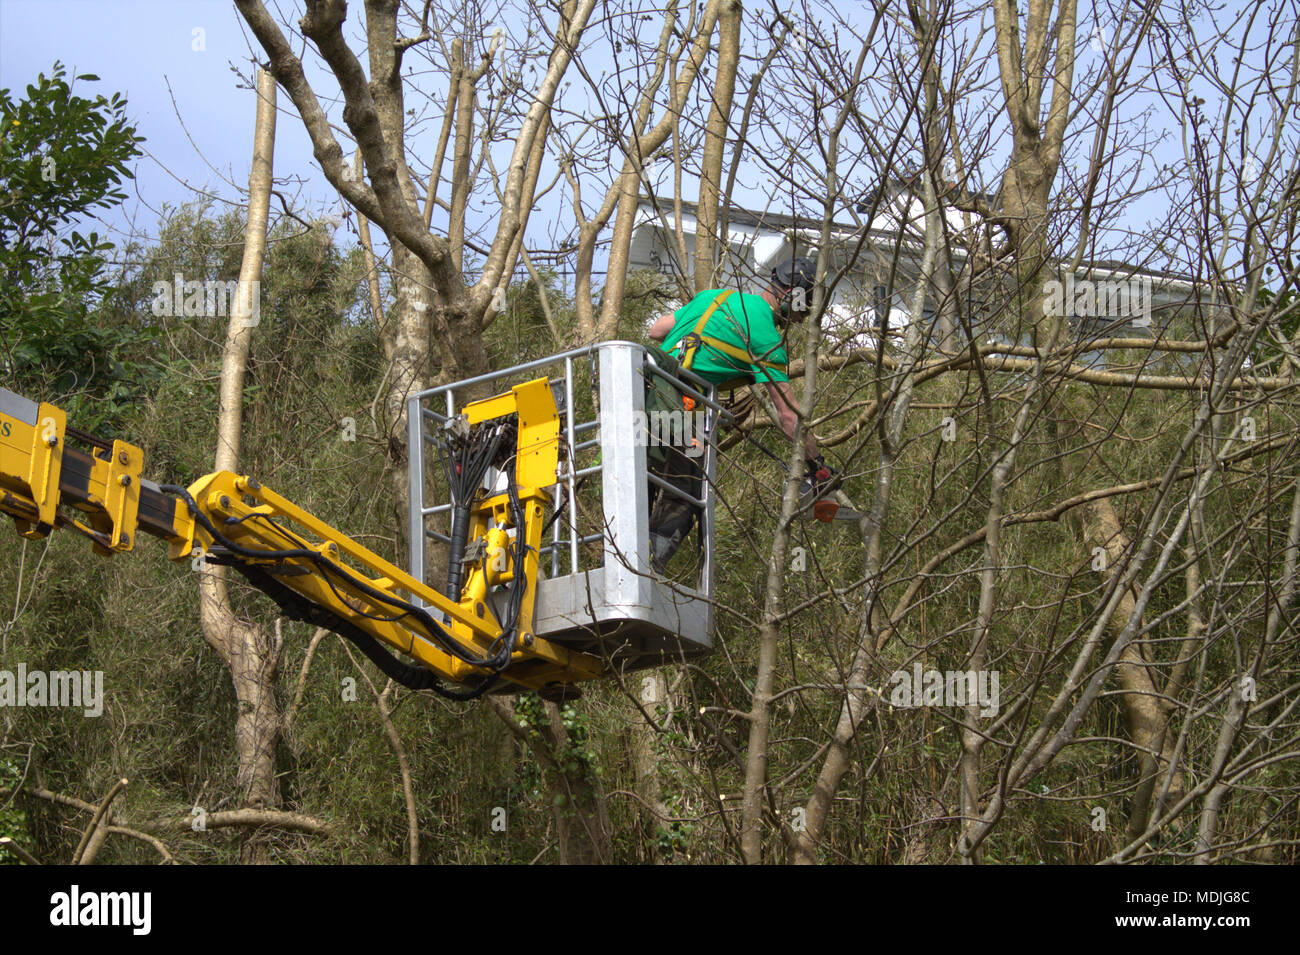 Holzfäller, Baum Chirurg auf ein Mobiltelefon mit einer Kettensäge Plattform, zurück überwucherten Baum's zu beschneiden, tragen die richtige Schutzkleidung. Stockfoto